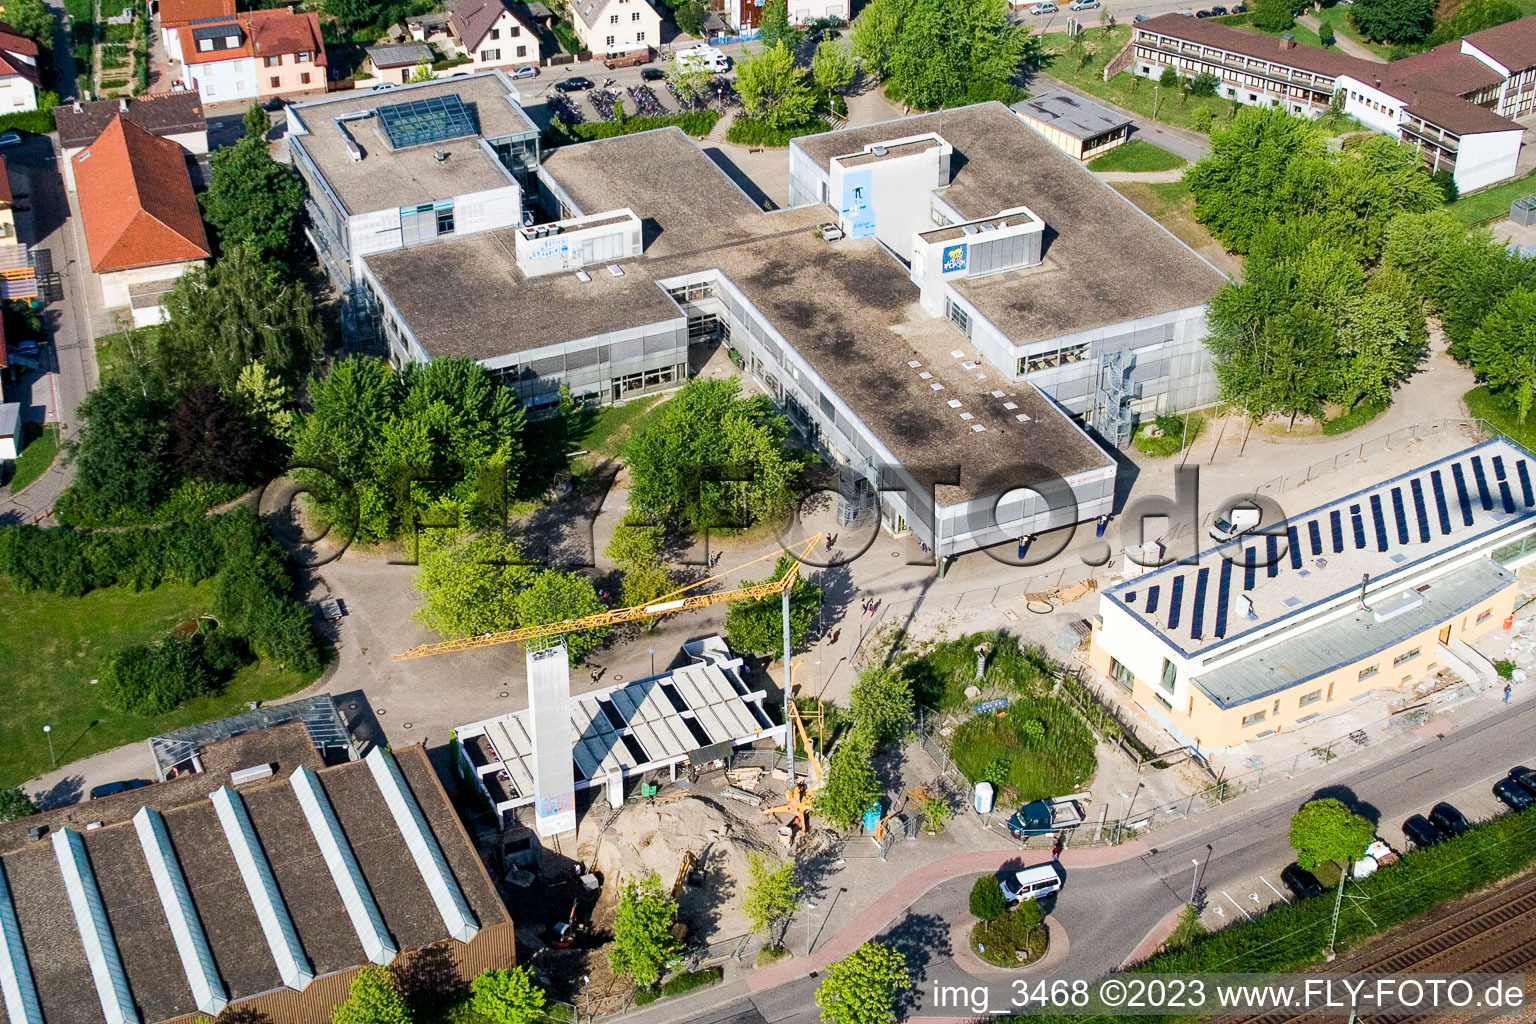 Ludwig-Marum-Gymnasium Pfinztal à le quartier Berghausen in Pfinztal dans le département Bade-Wurtemberg, Allemagne vu d'un drone